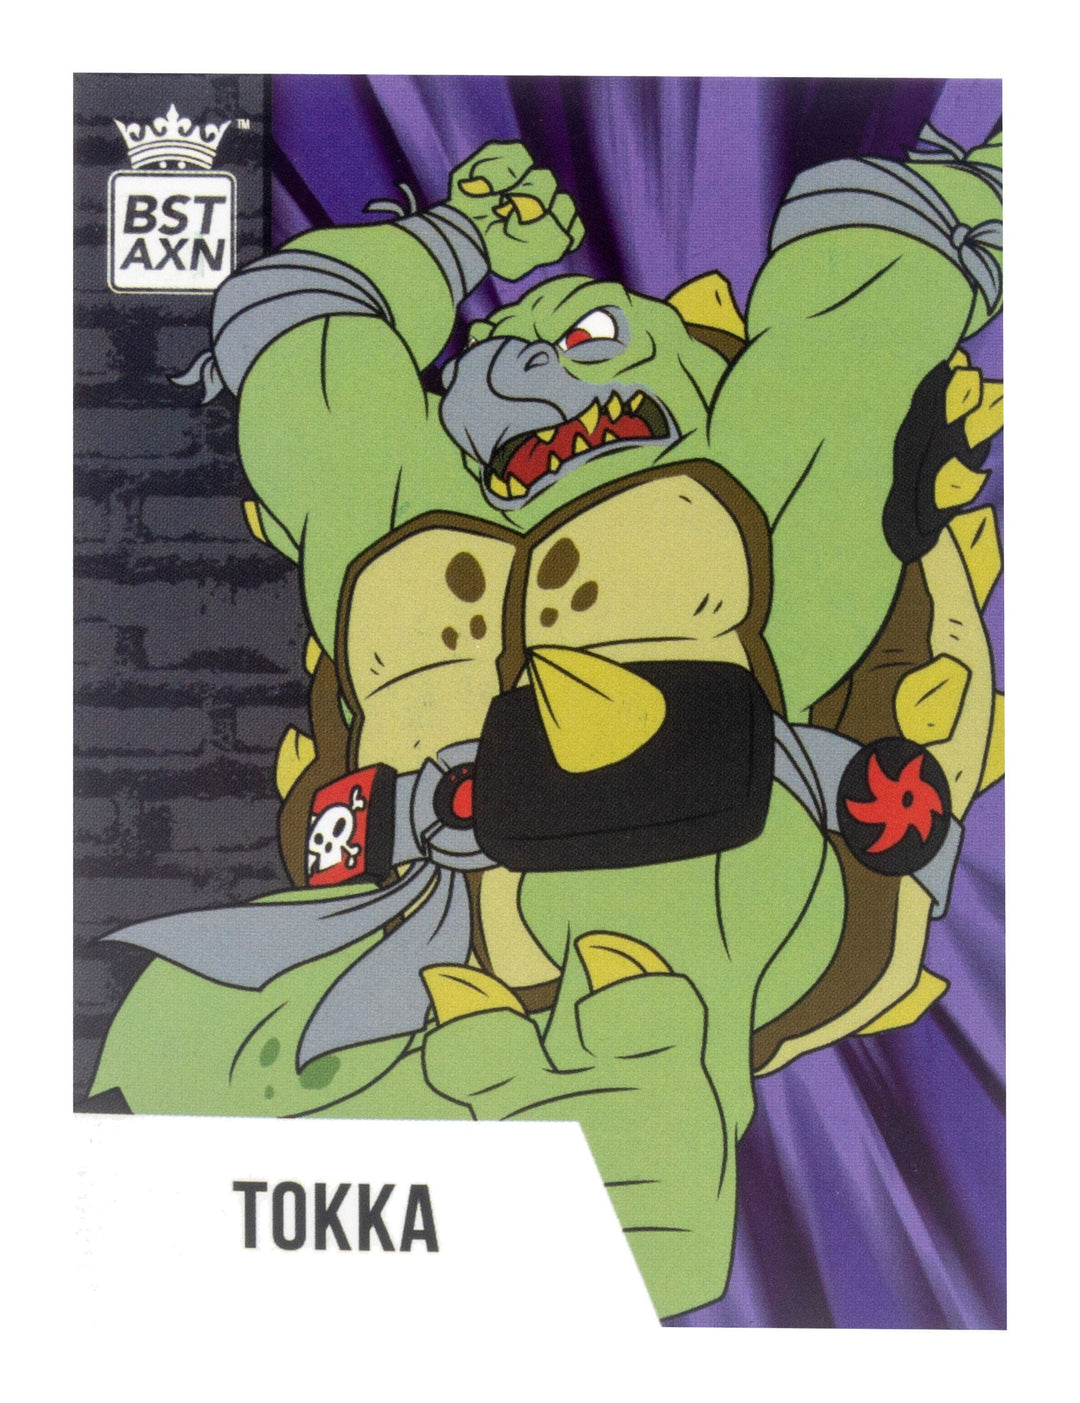 Teenage Mutant Ninja Turtles BST AXN Tokka Action Figure